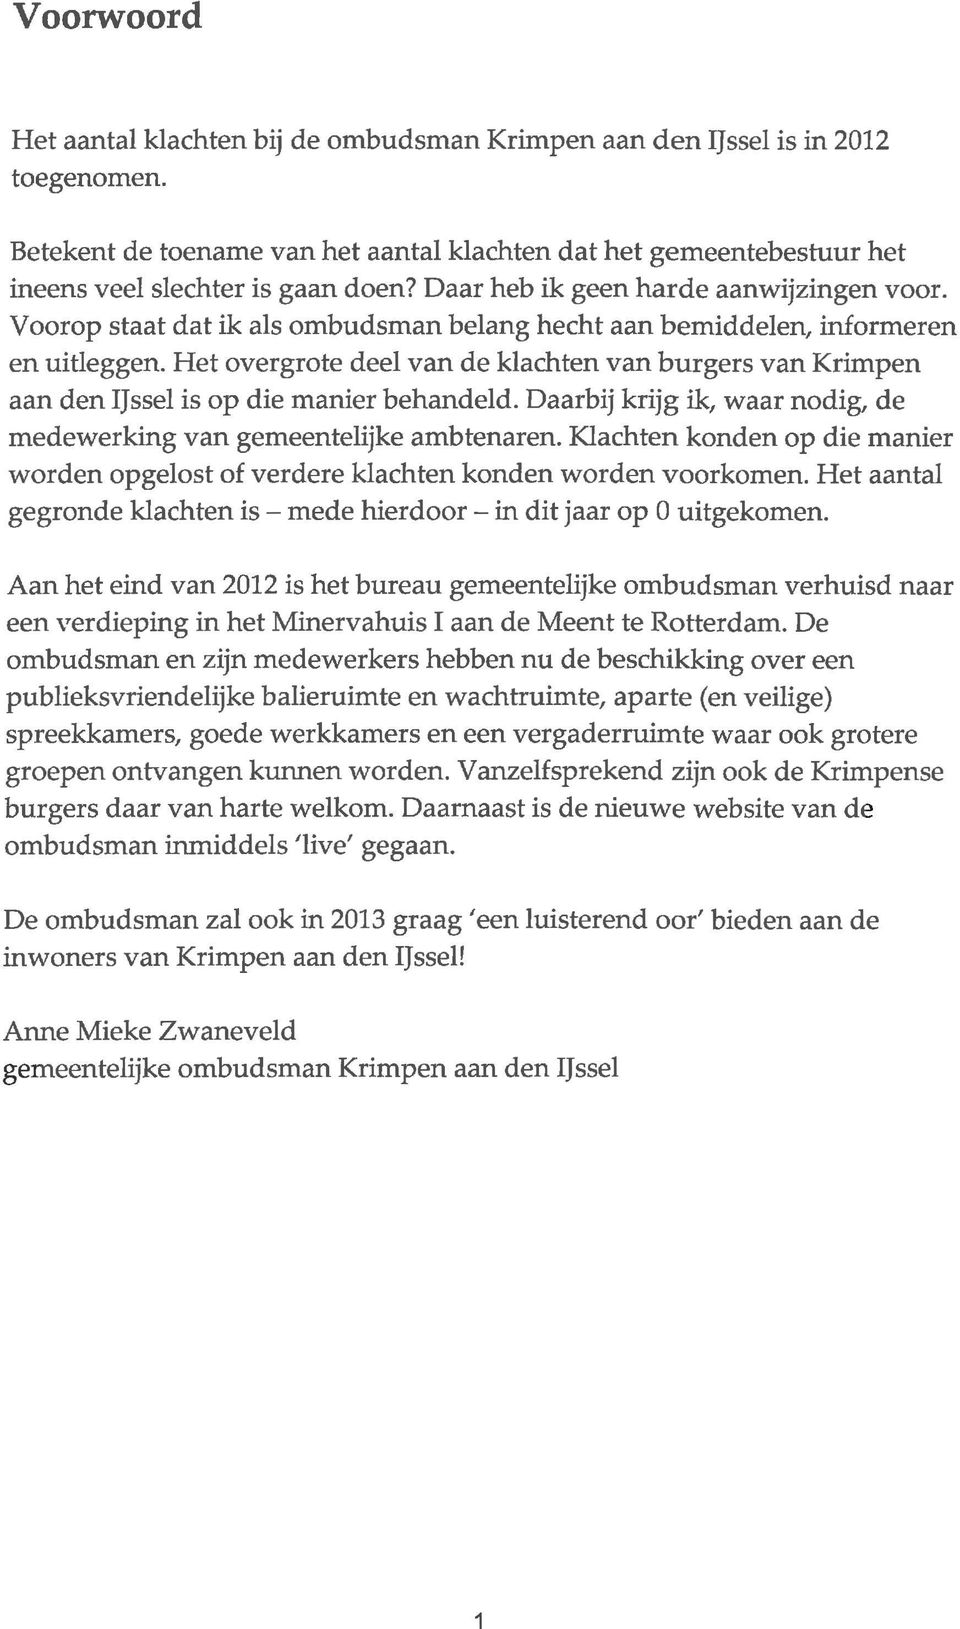 Het overgrote deel van de klachten van burgers van Krimpen aan den IJssel is op die manier behandeld. Daarbij krijg ik, waar nodig, de medewerking van gemeentelijke ambtenaren.